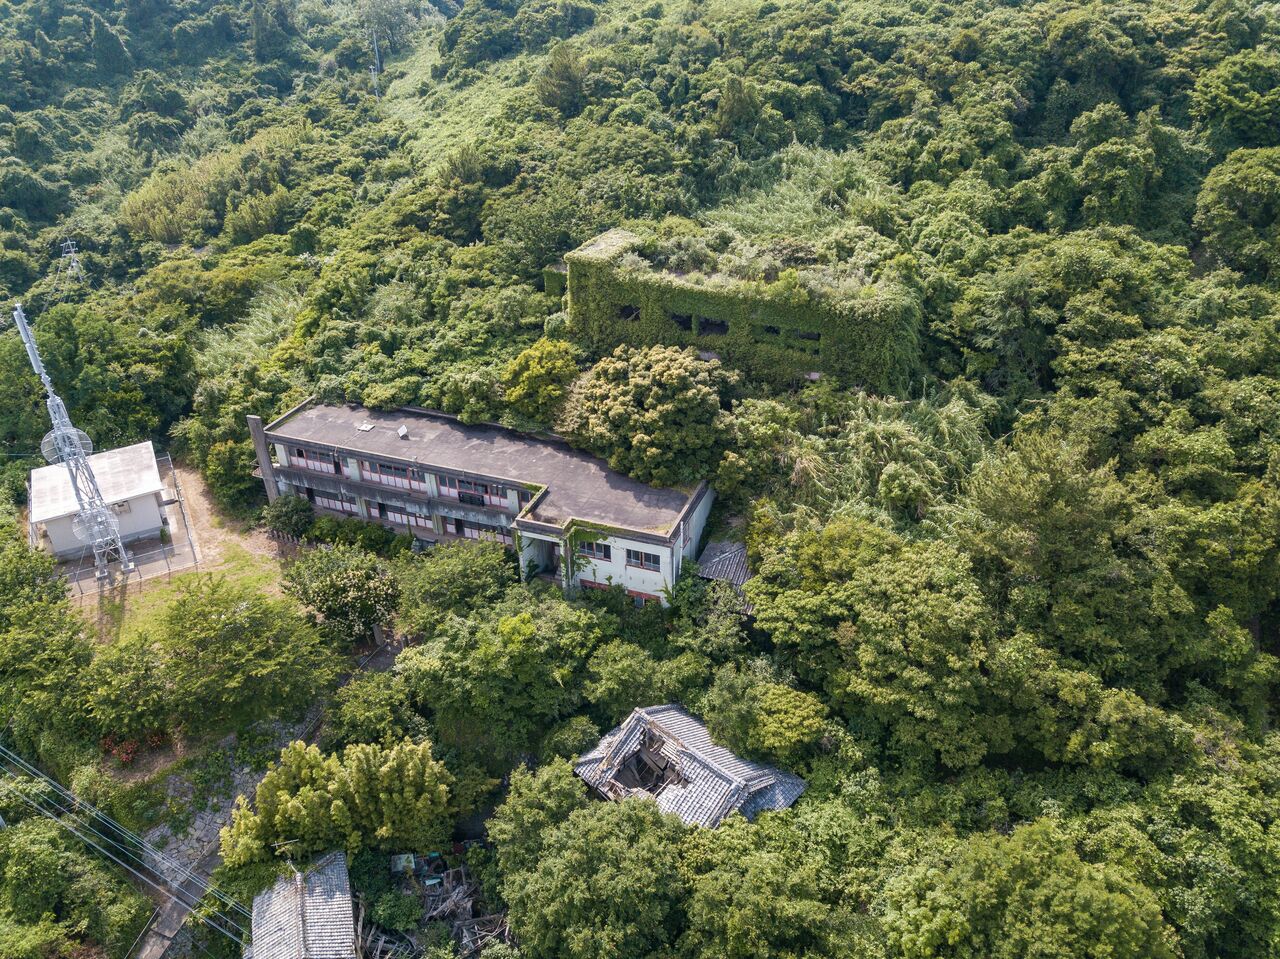 画面中央の青島小学校のすぐそばには、最初に小学校の校舎として利用された潮音寺が見える